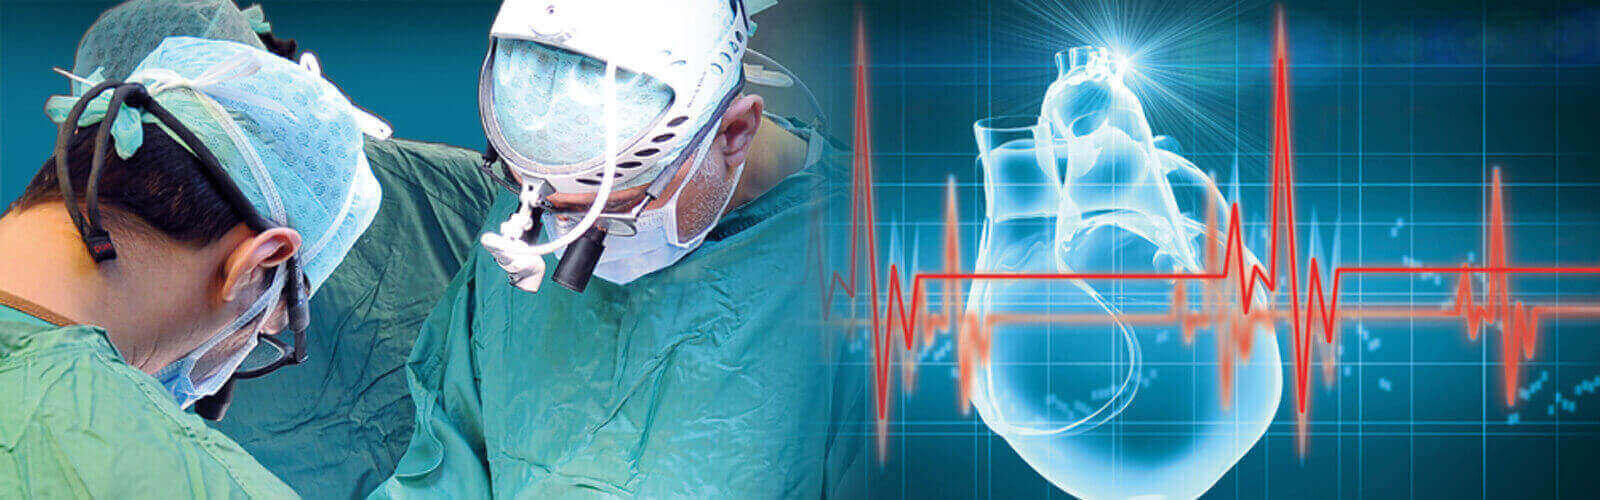 Coronary Angioplasty Surgery in Oman